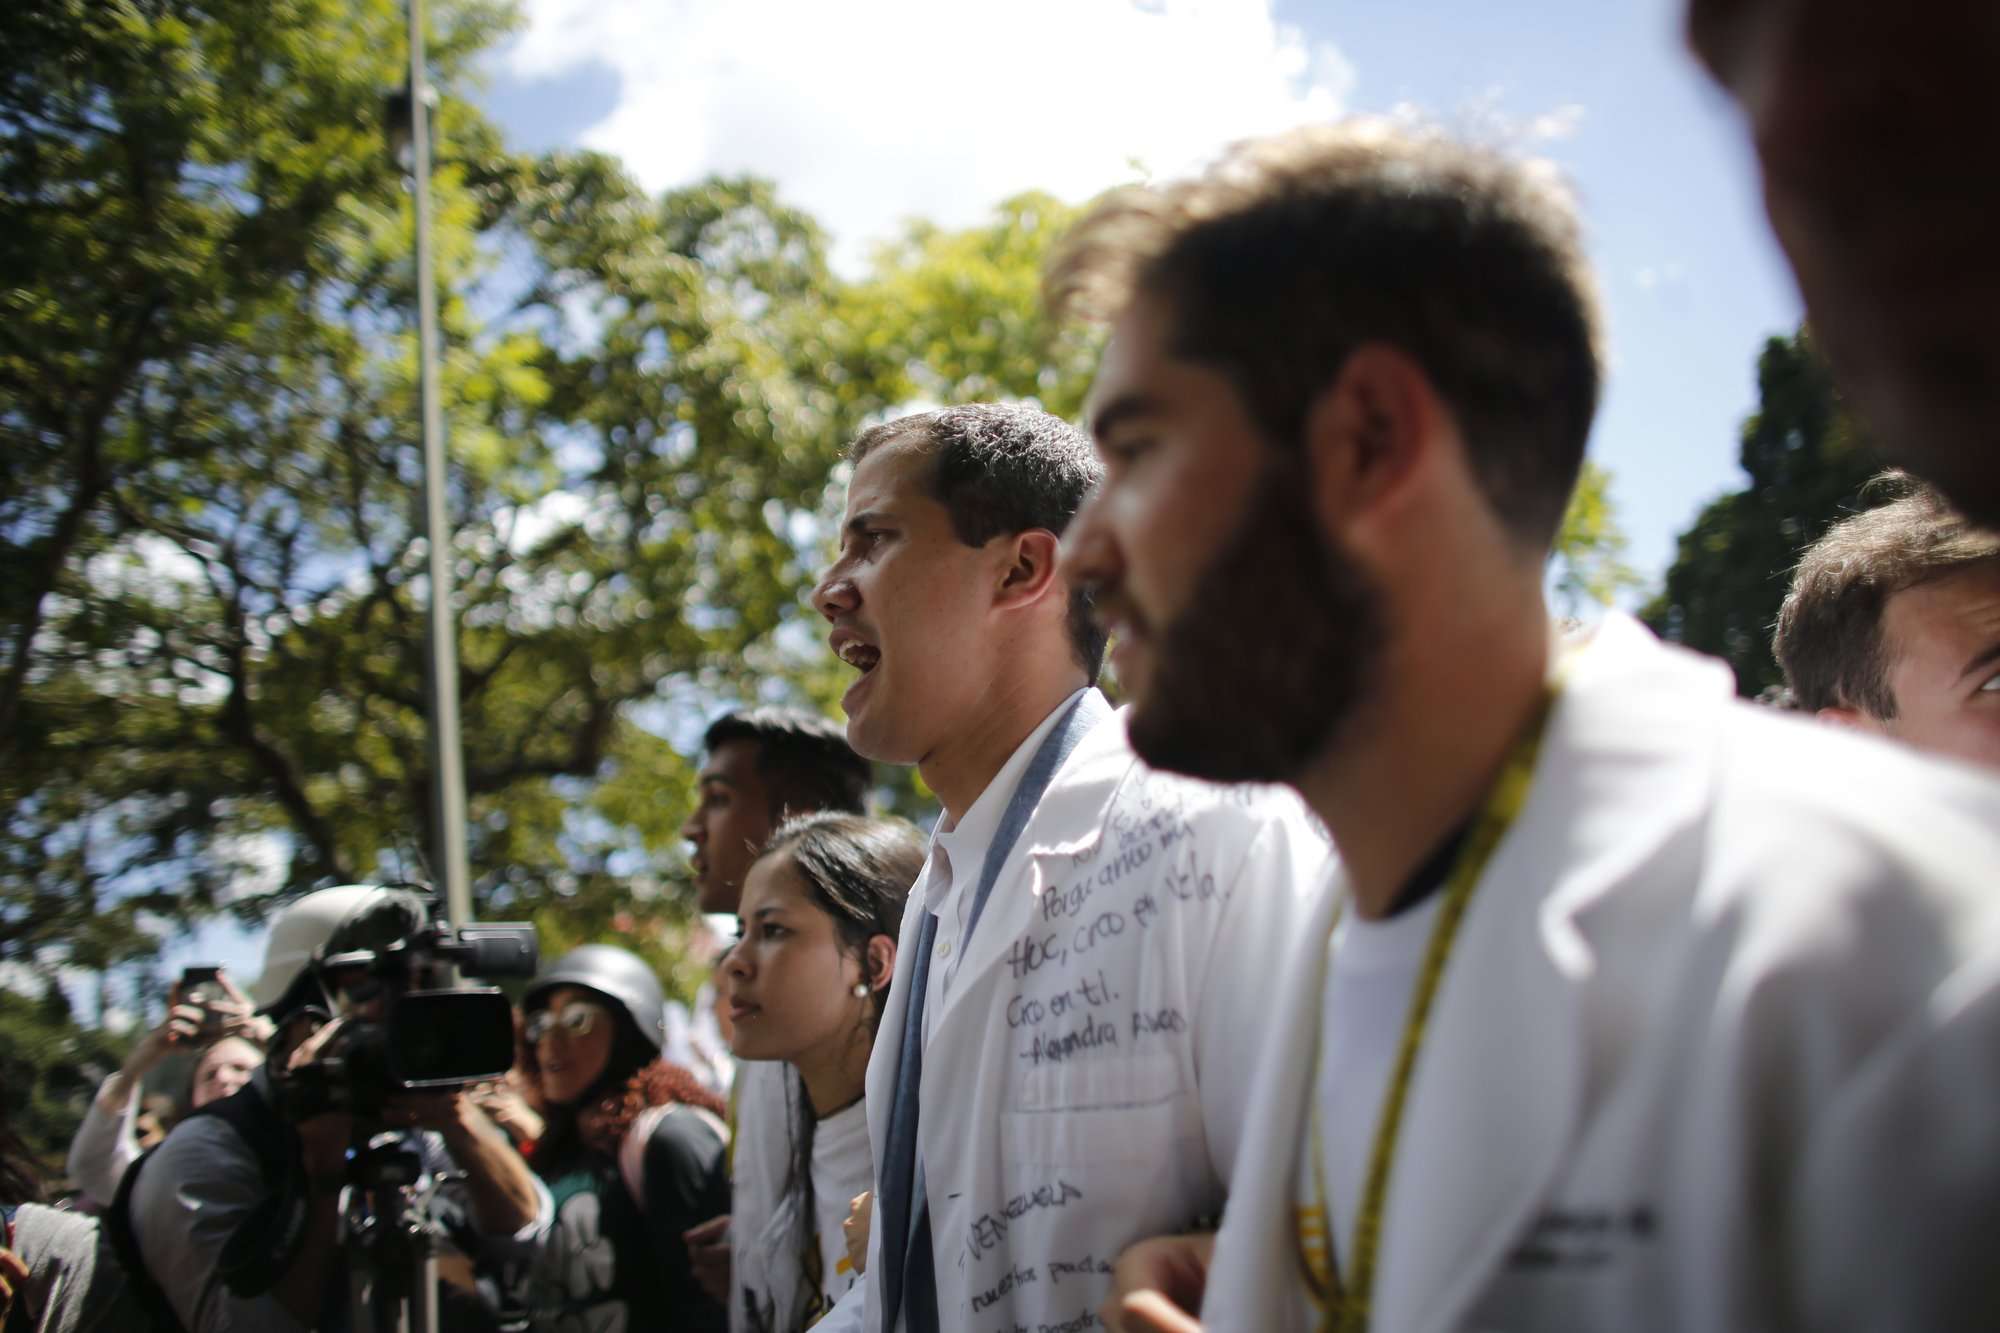 El presidente de la Asamblea Nacional de oposición, Juan Guaido, quien se declaró a sí mismo presidente interino de Venezuela, participa en una caminata contra el presidente Nicolás Maduro, en Caracas, Venezuela. AP